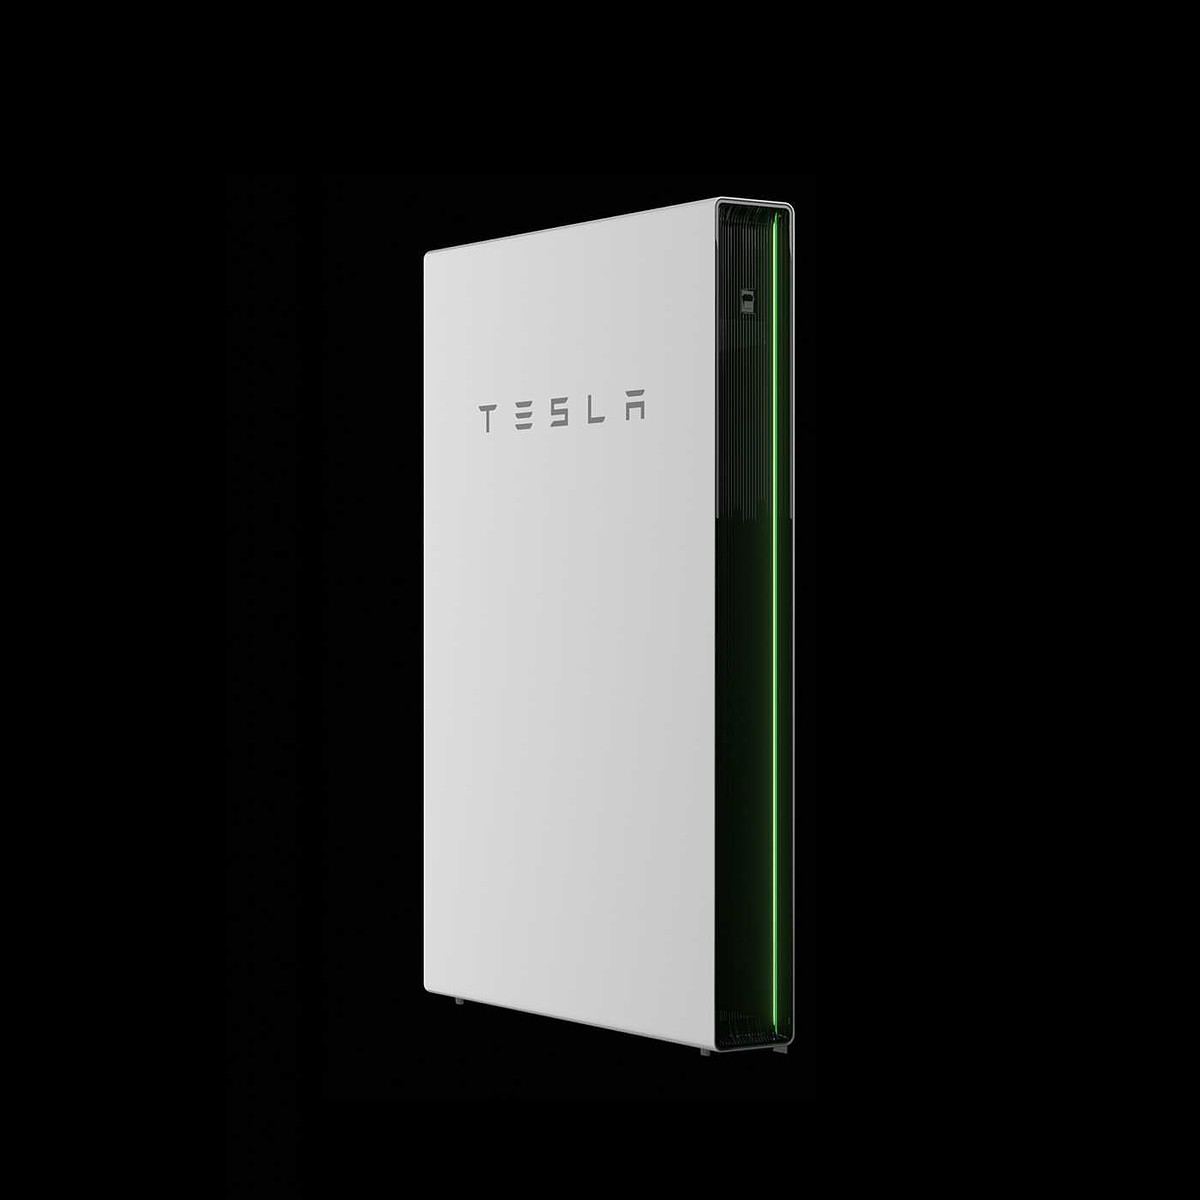 Revolución solar: Tesla Powerwall el futuro de la energía renovable